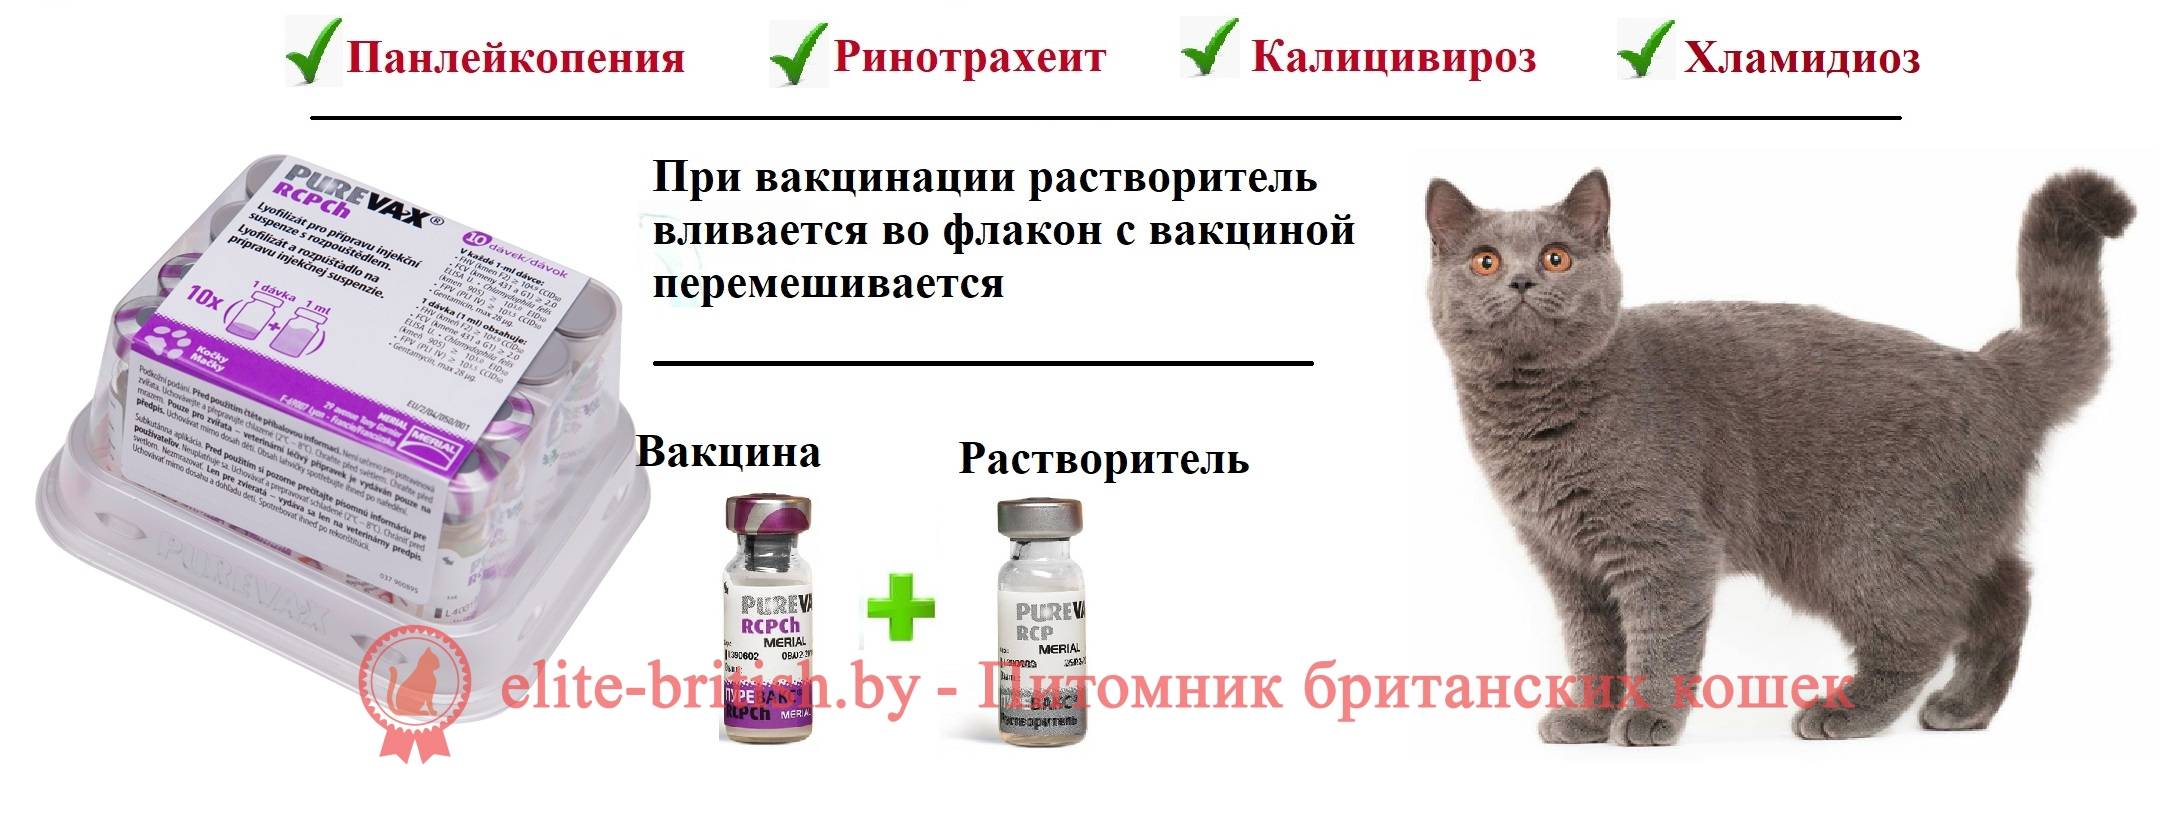 Прививки для кошек: от каких болезней, когда делать, таблица, вакцины